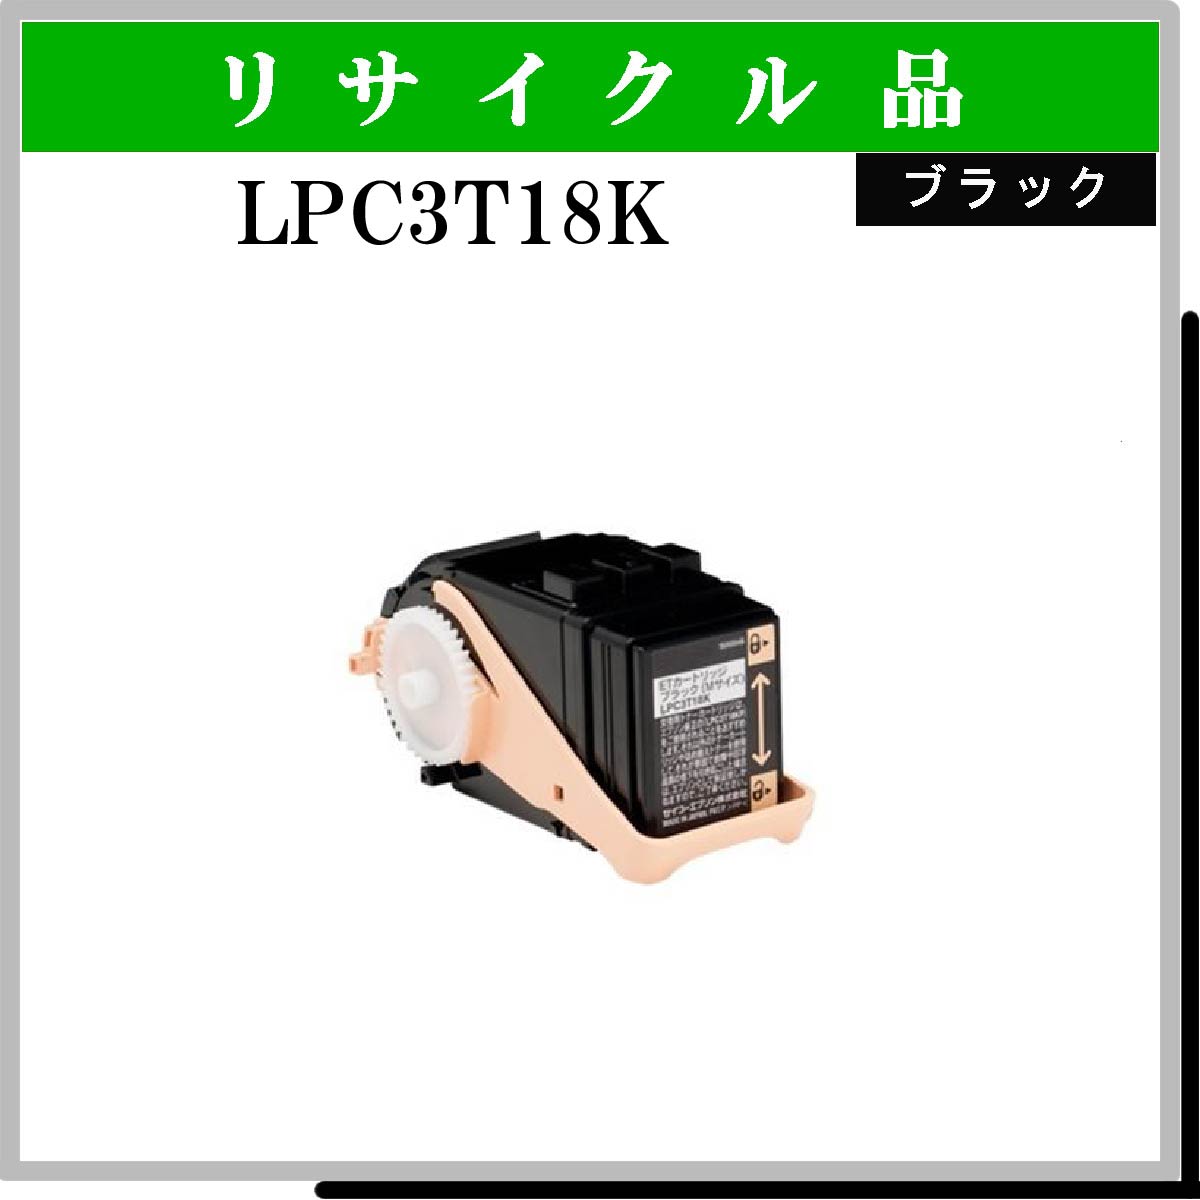 LPC3T18K